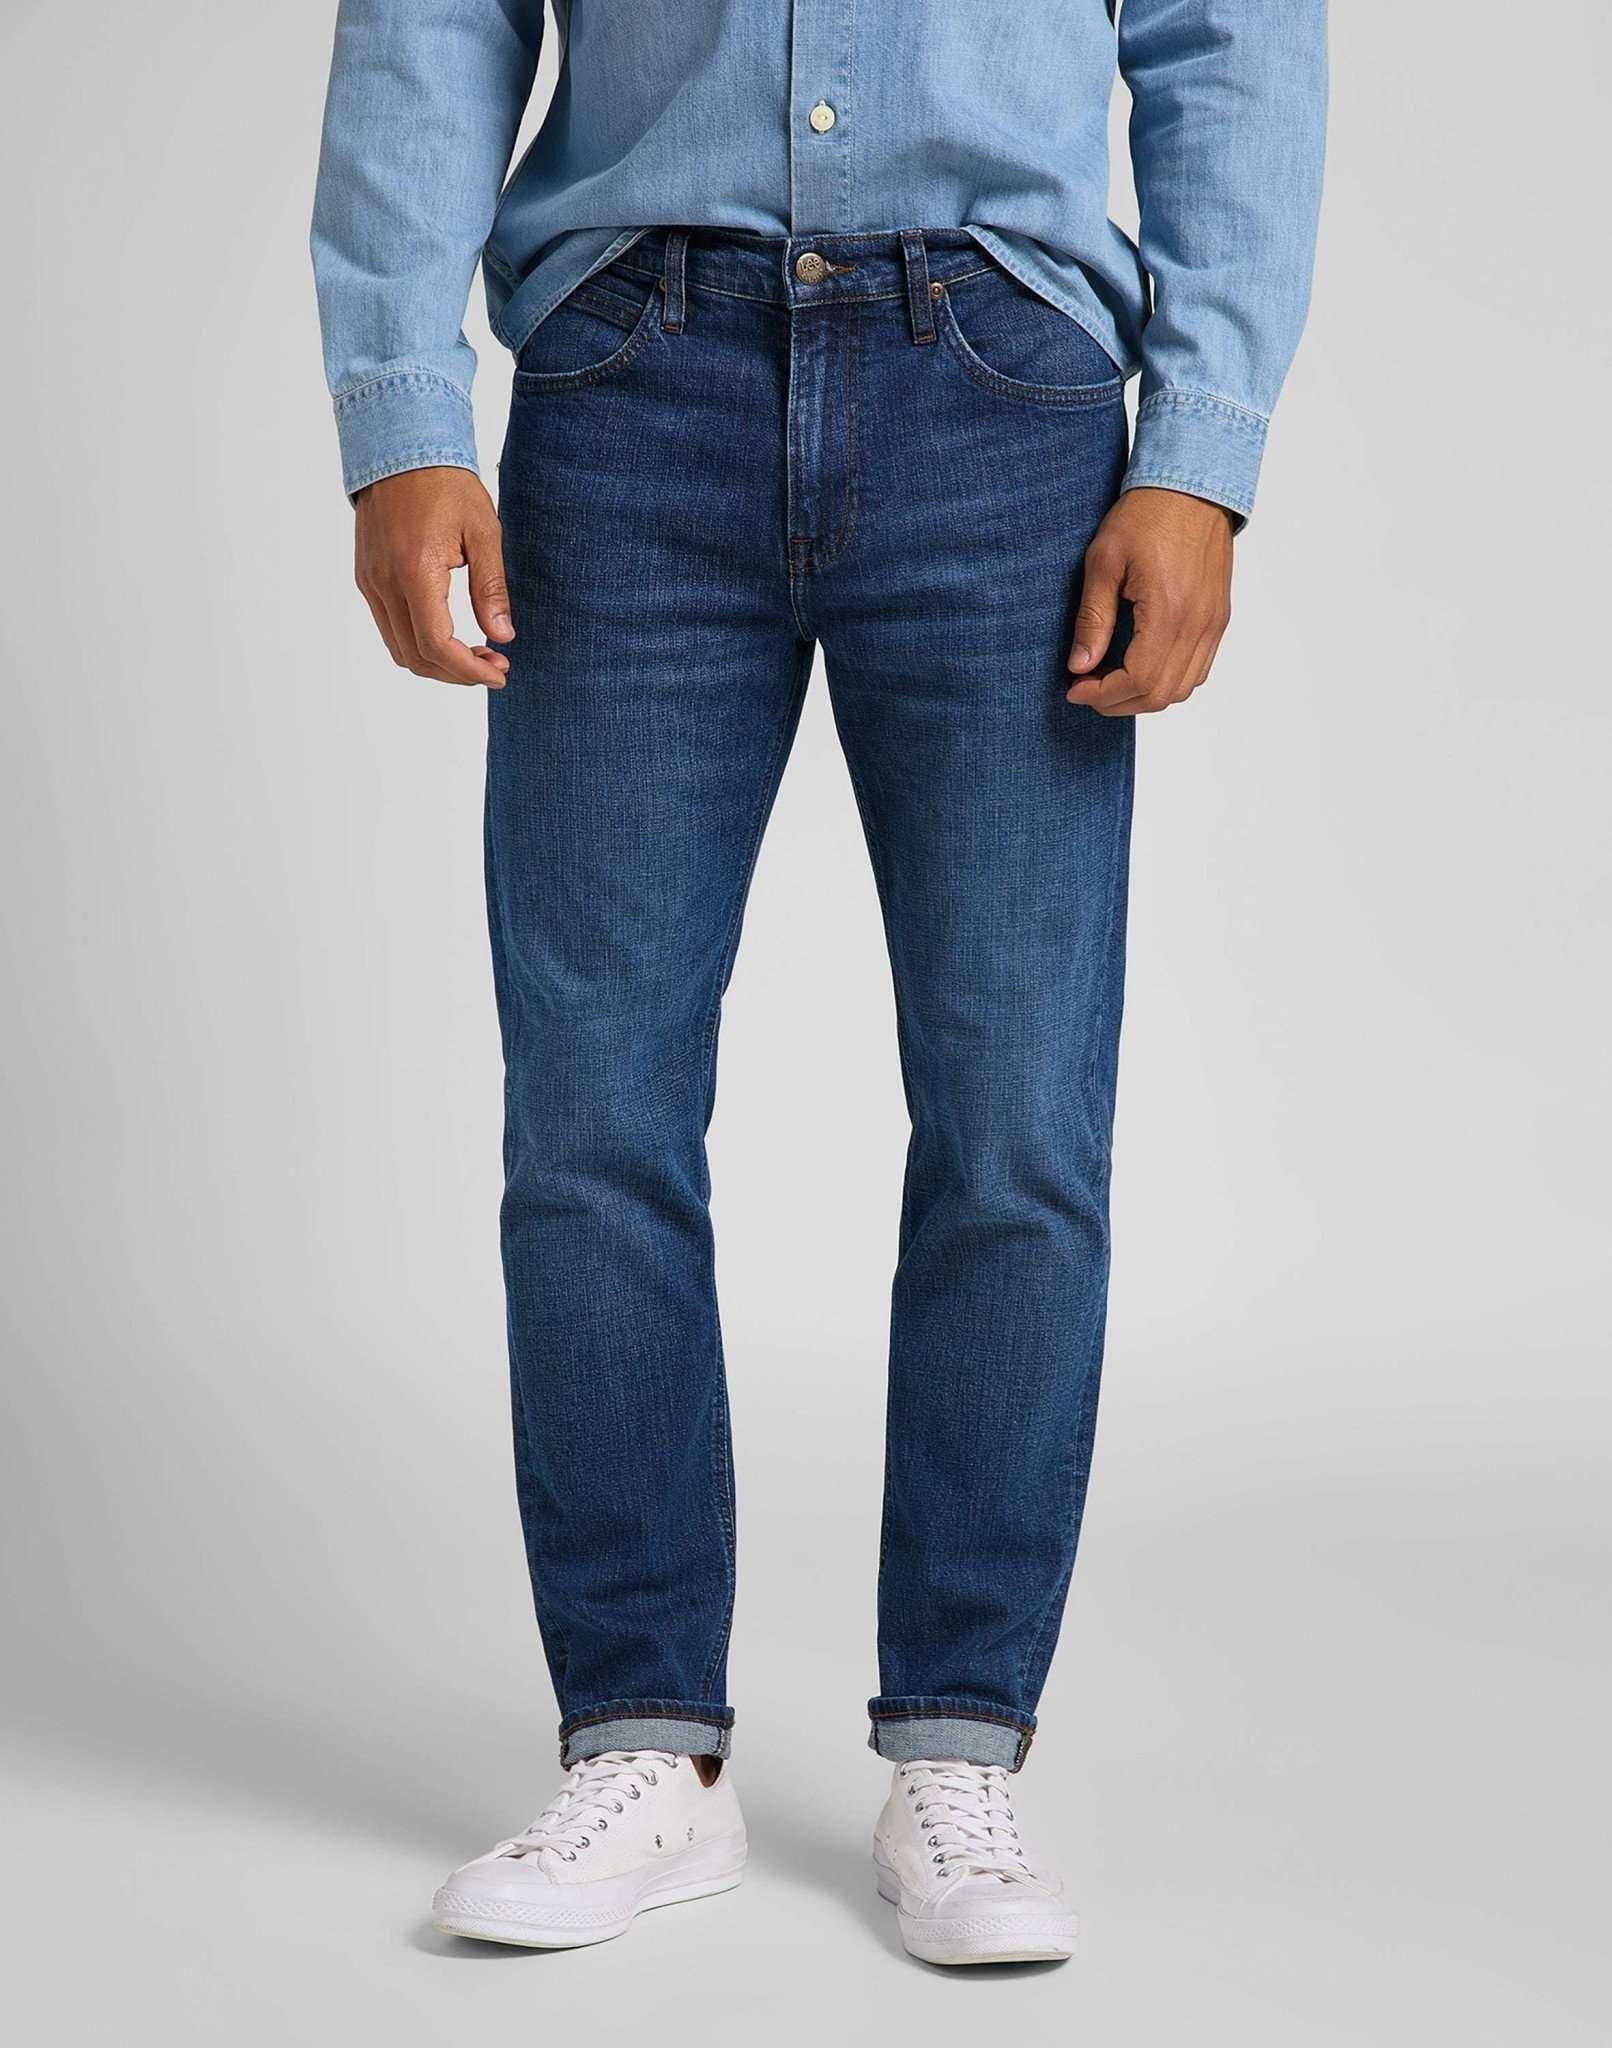 Jeans Straight Leg Austin Herren Blau Denim L32/W34 von Lee